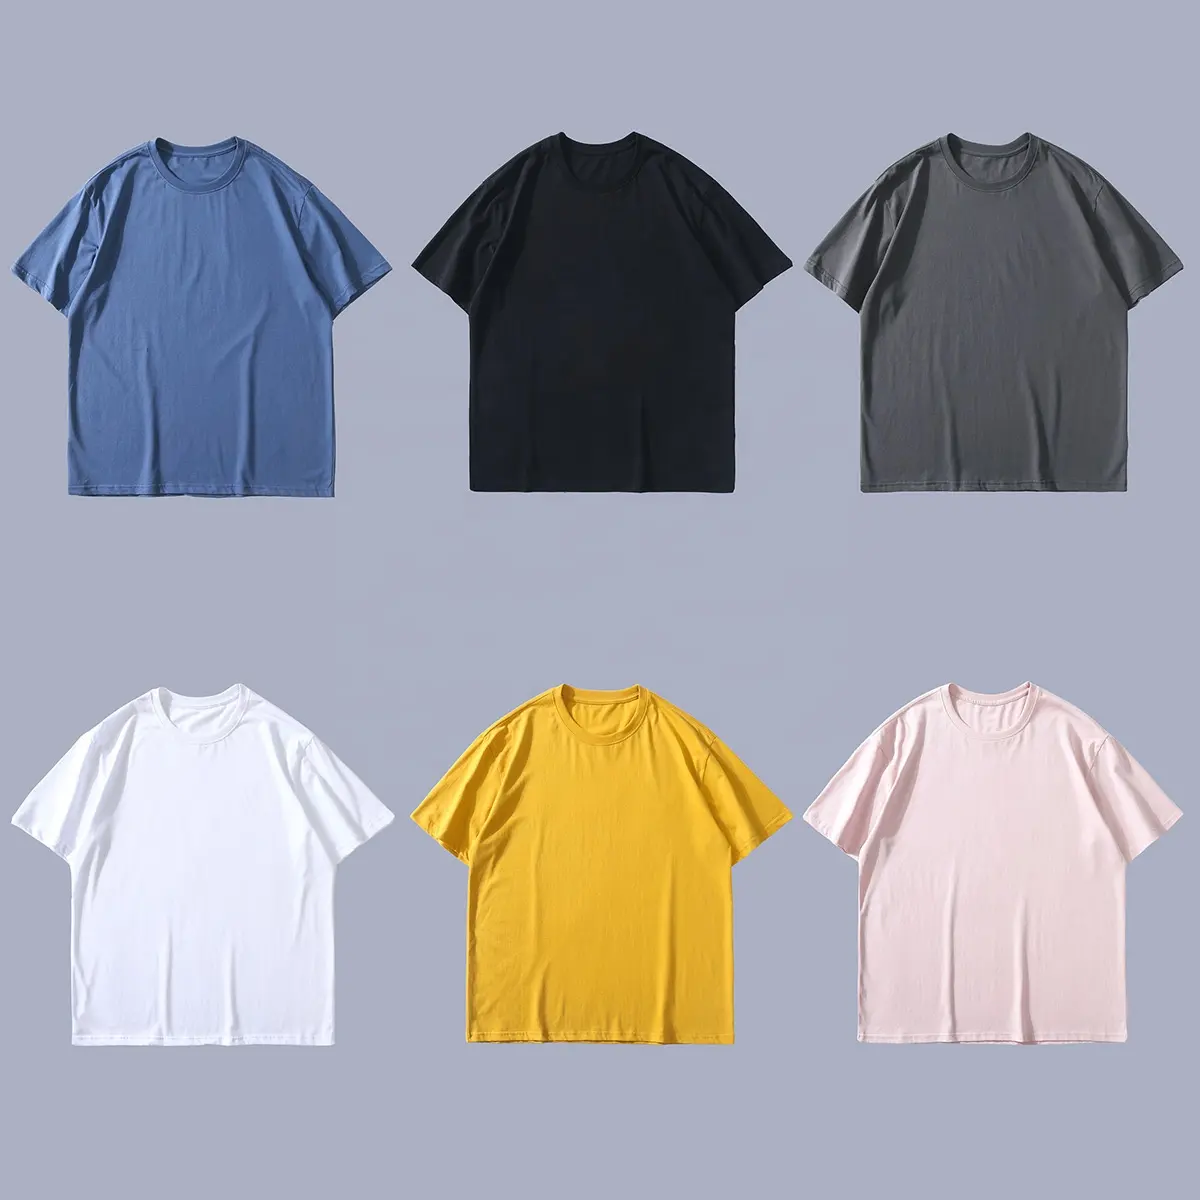 L2-Camiseta blanca de alta calidad para hombre, camisa 100% de algodón con impresión personalizada, lisa, con Logo impreso, color negro, venta al por mayor